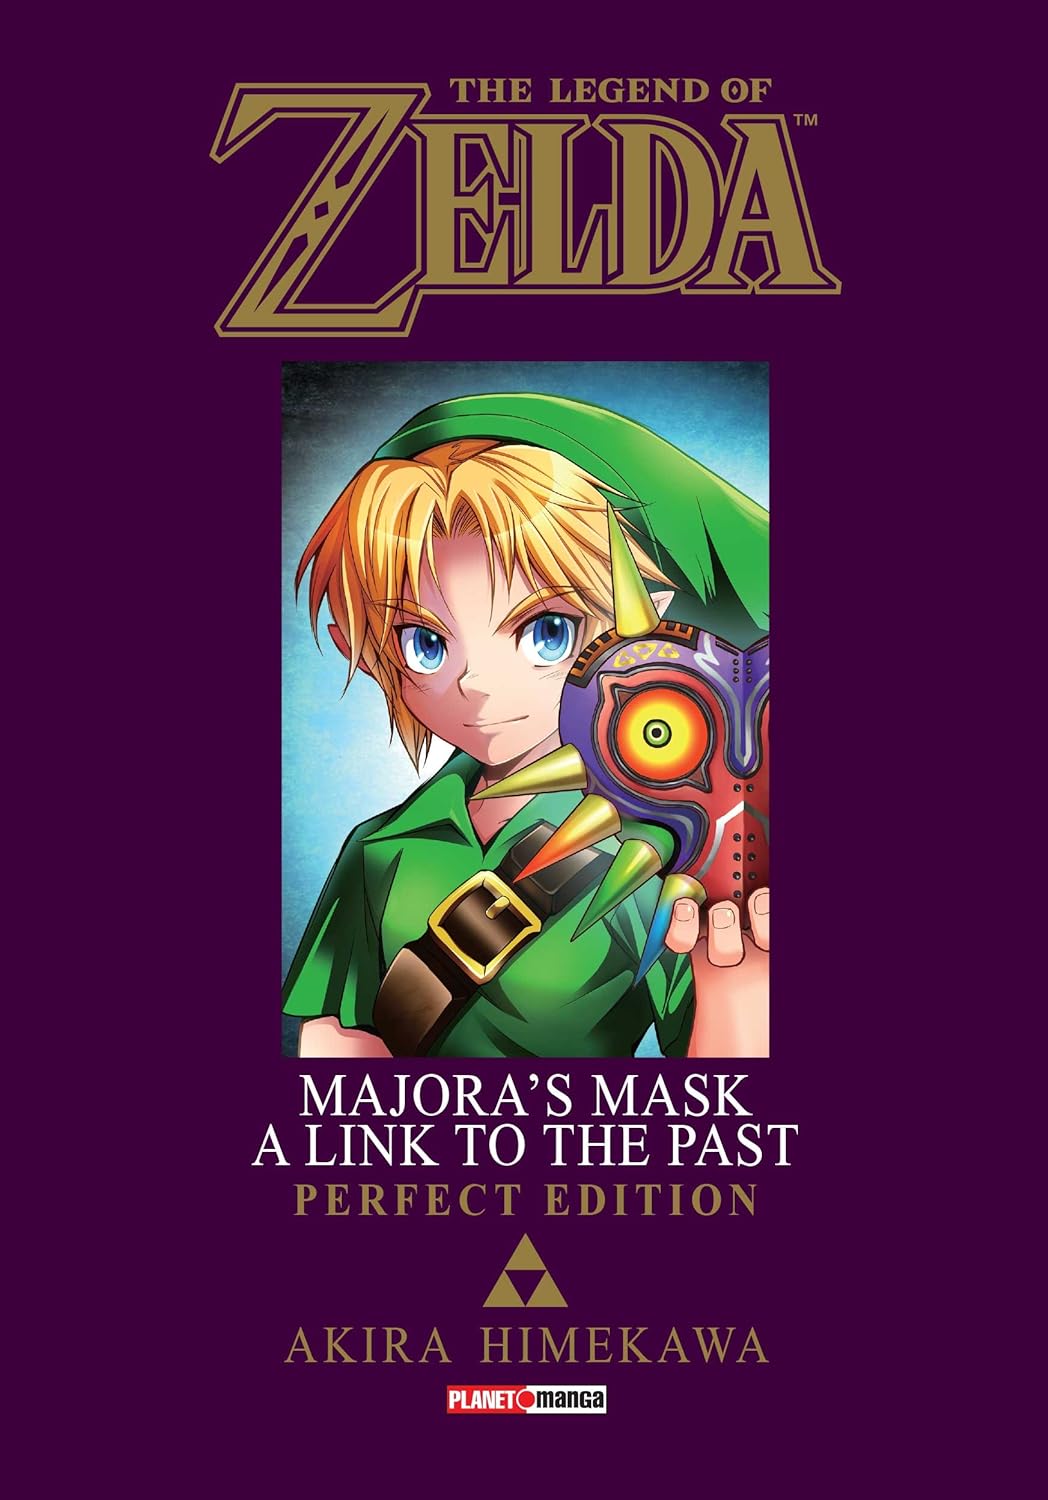 The Legend of Zelda: Majora's Mask cover 0